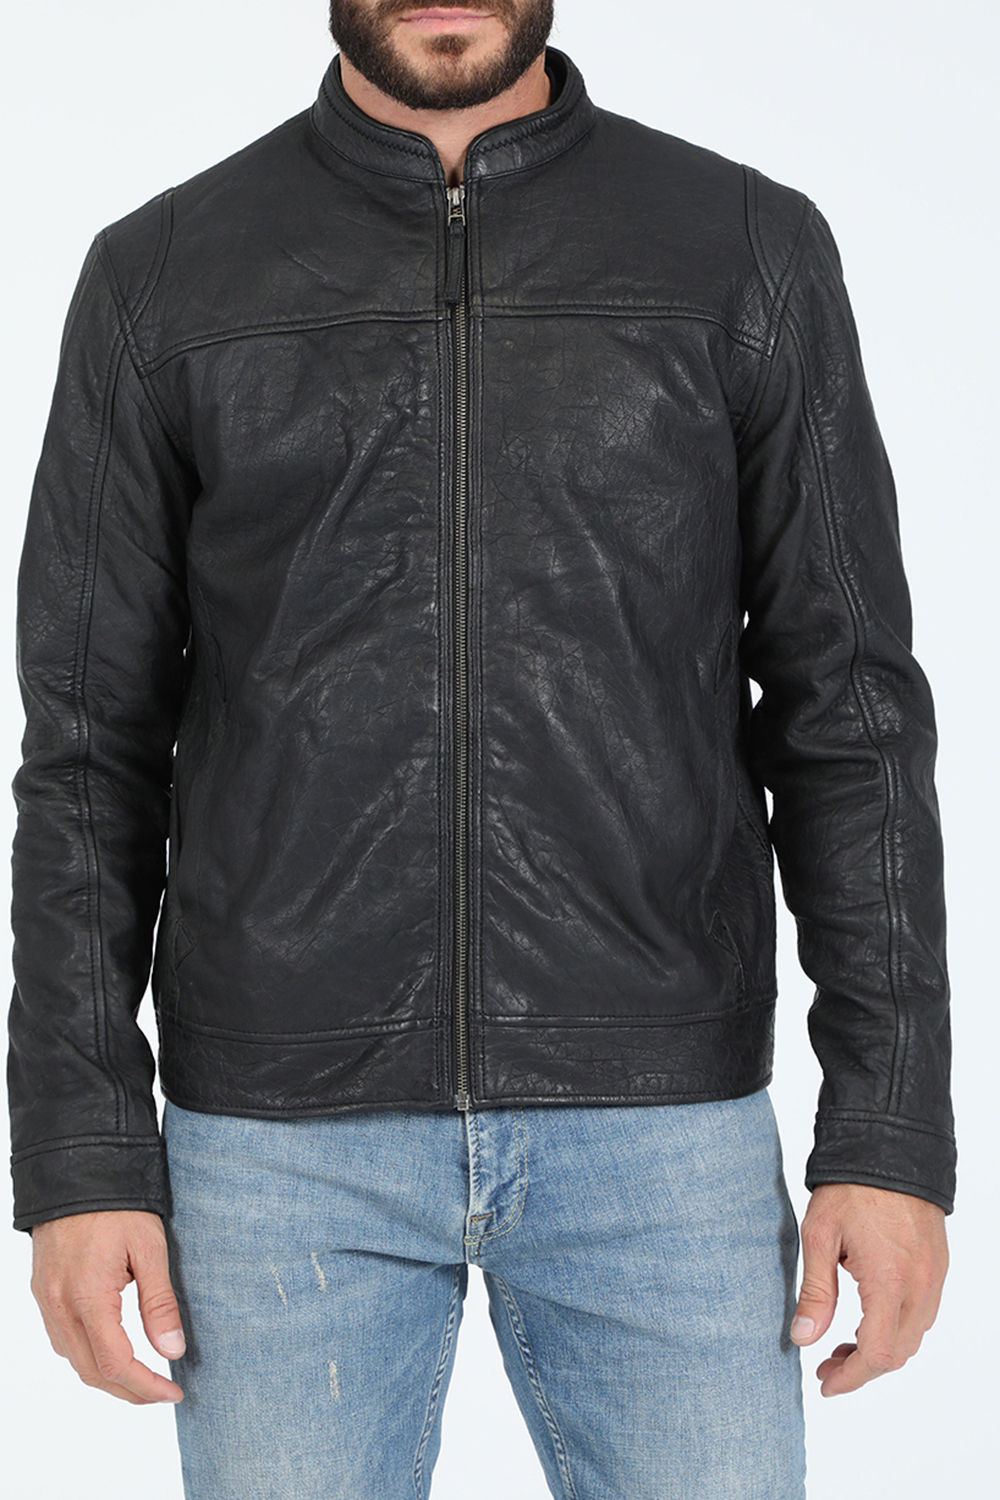 GABBA – Ανδρικο δερματινο jacket GABBA Benton Black Leather Jacket μαυρο